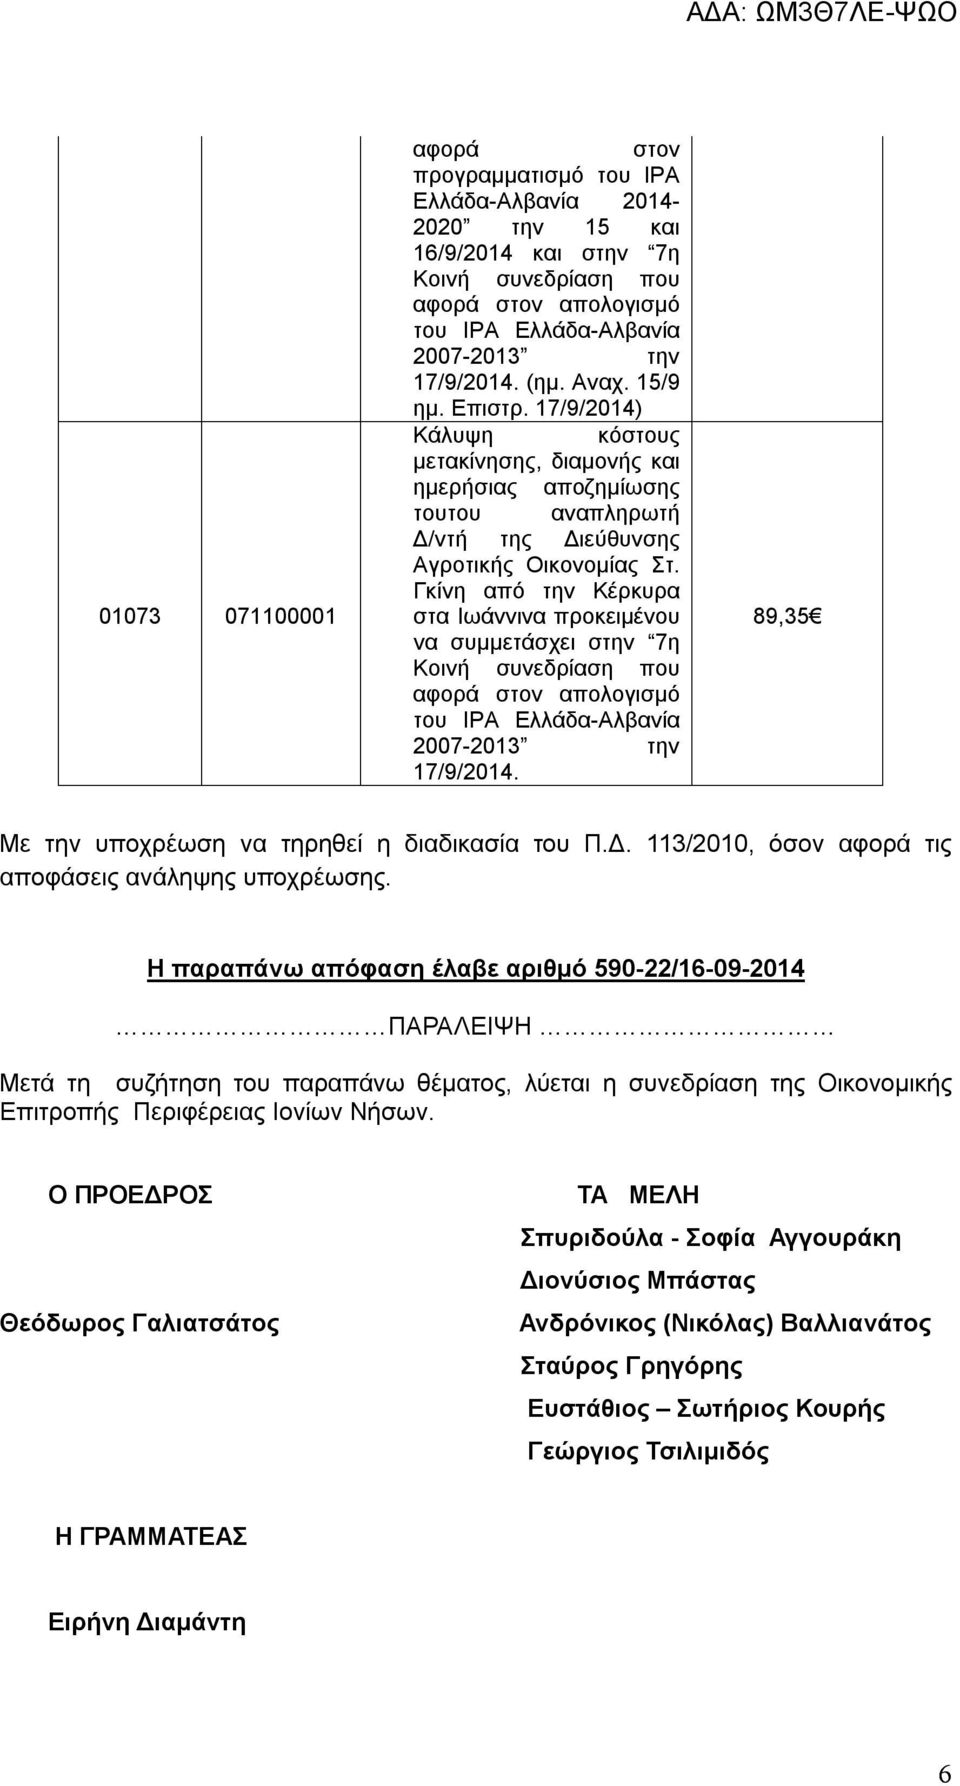 Γκίνη από την Κέρκυρα στα Ιωάννινα προκειμένου να συμμετάσχει στην 7η Κοινή συνεδρίαση που αφορά στον απολογισμό του ΙΡΑ Ελλάδα-Αλβανία 2007-2013 την 17/9/2014.